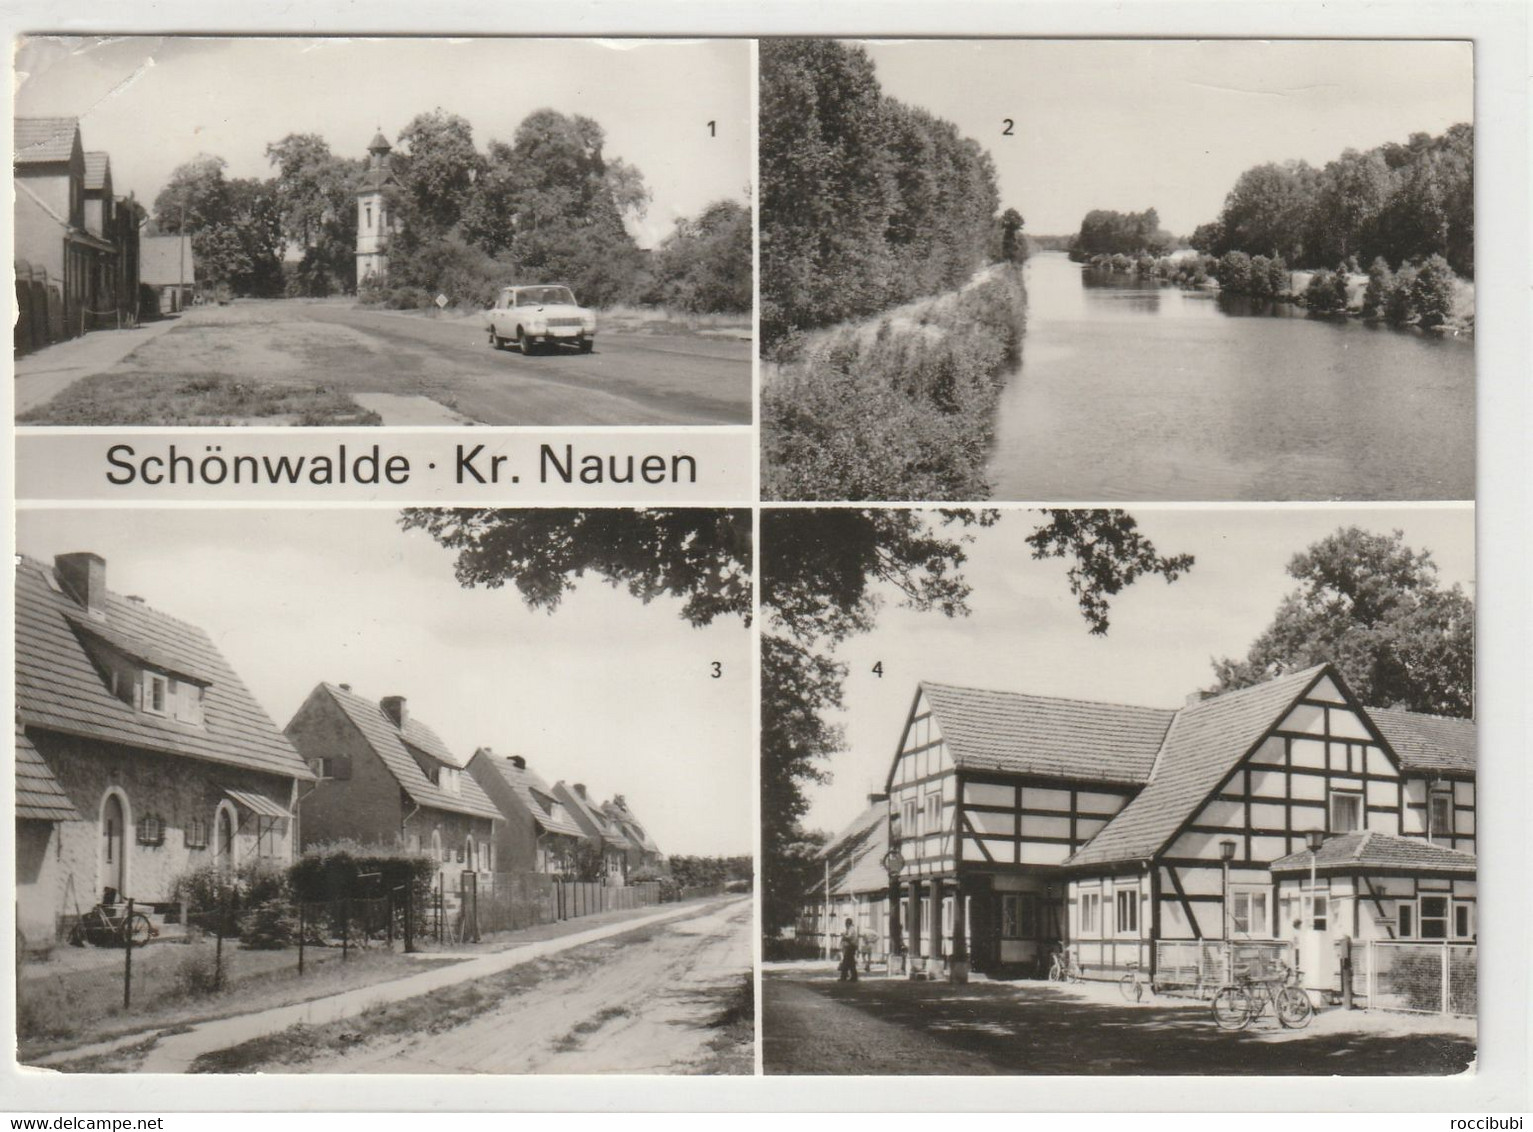 Schönwalde - Schönwalde